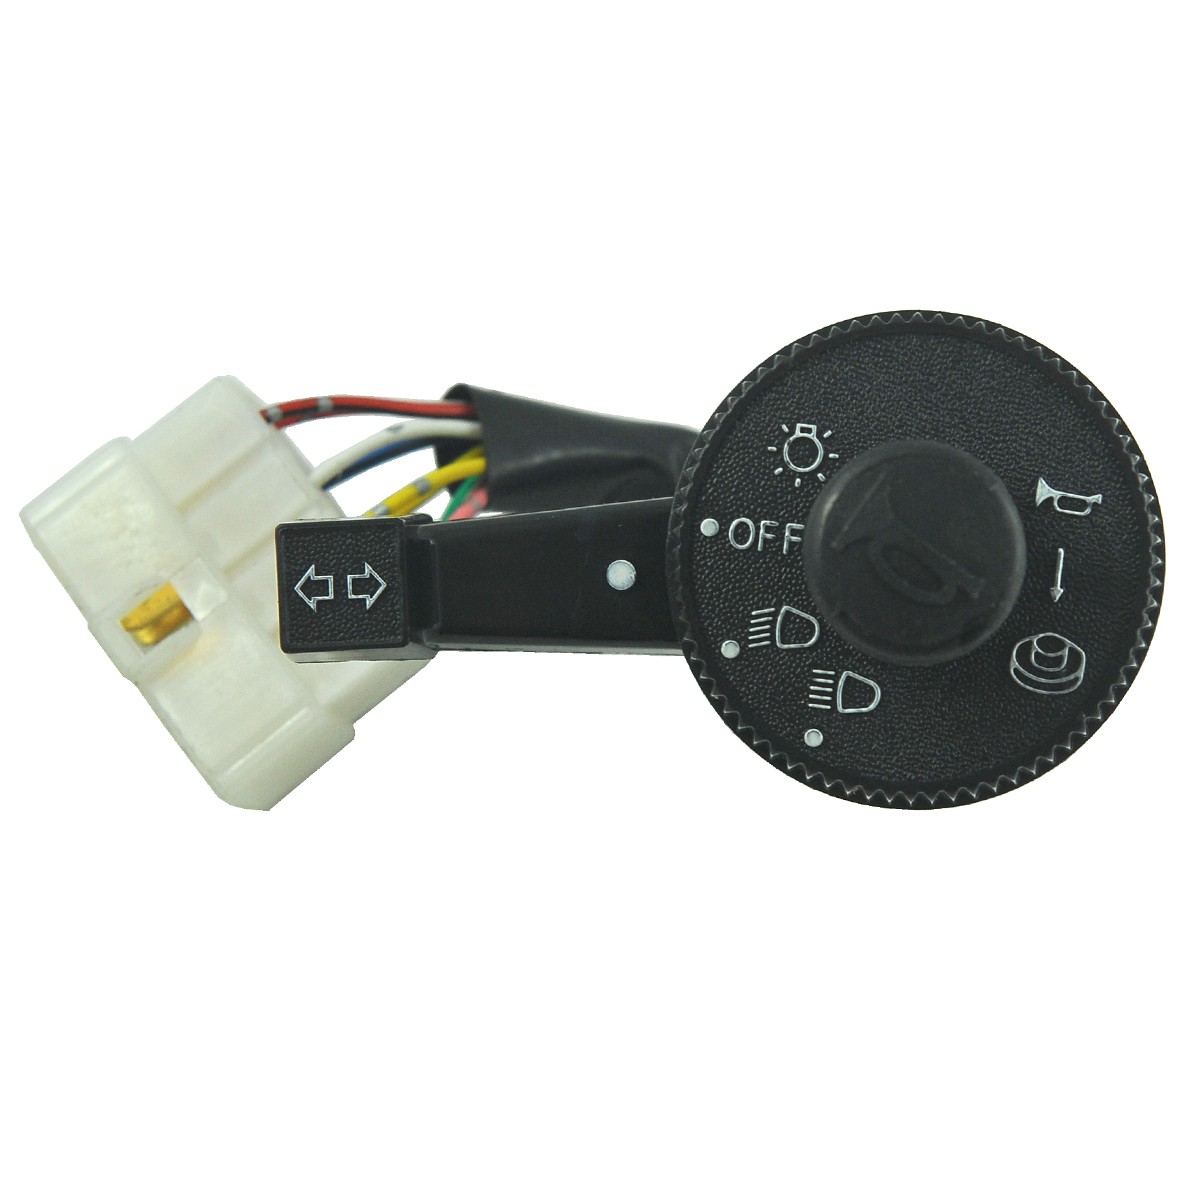 Interrupteur d'éclairage / Kubota L2050/L2250/L2850/L3250/L3408/L4508/M5000 / 31351-32100